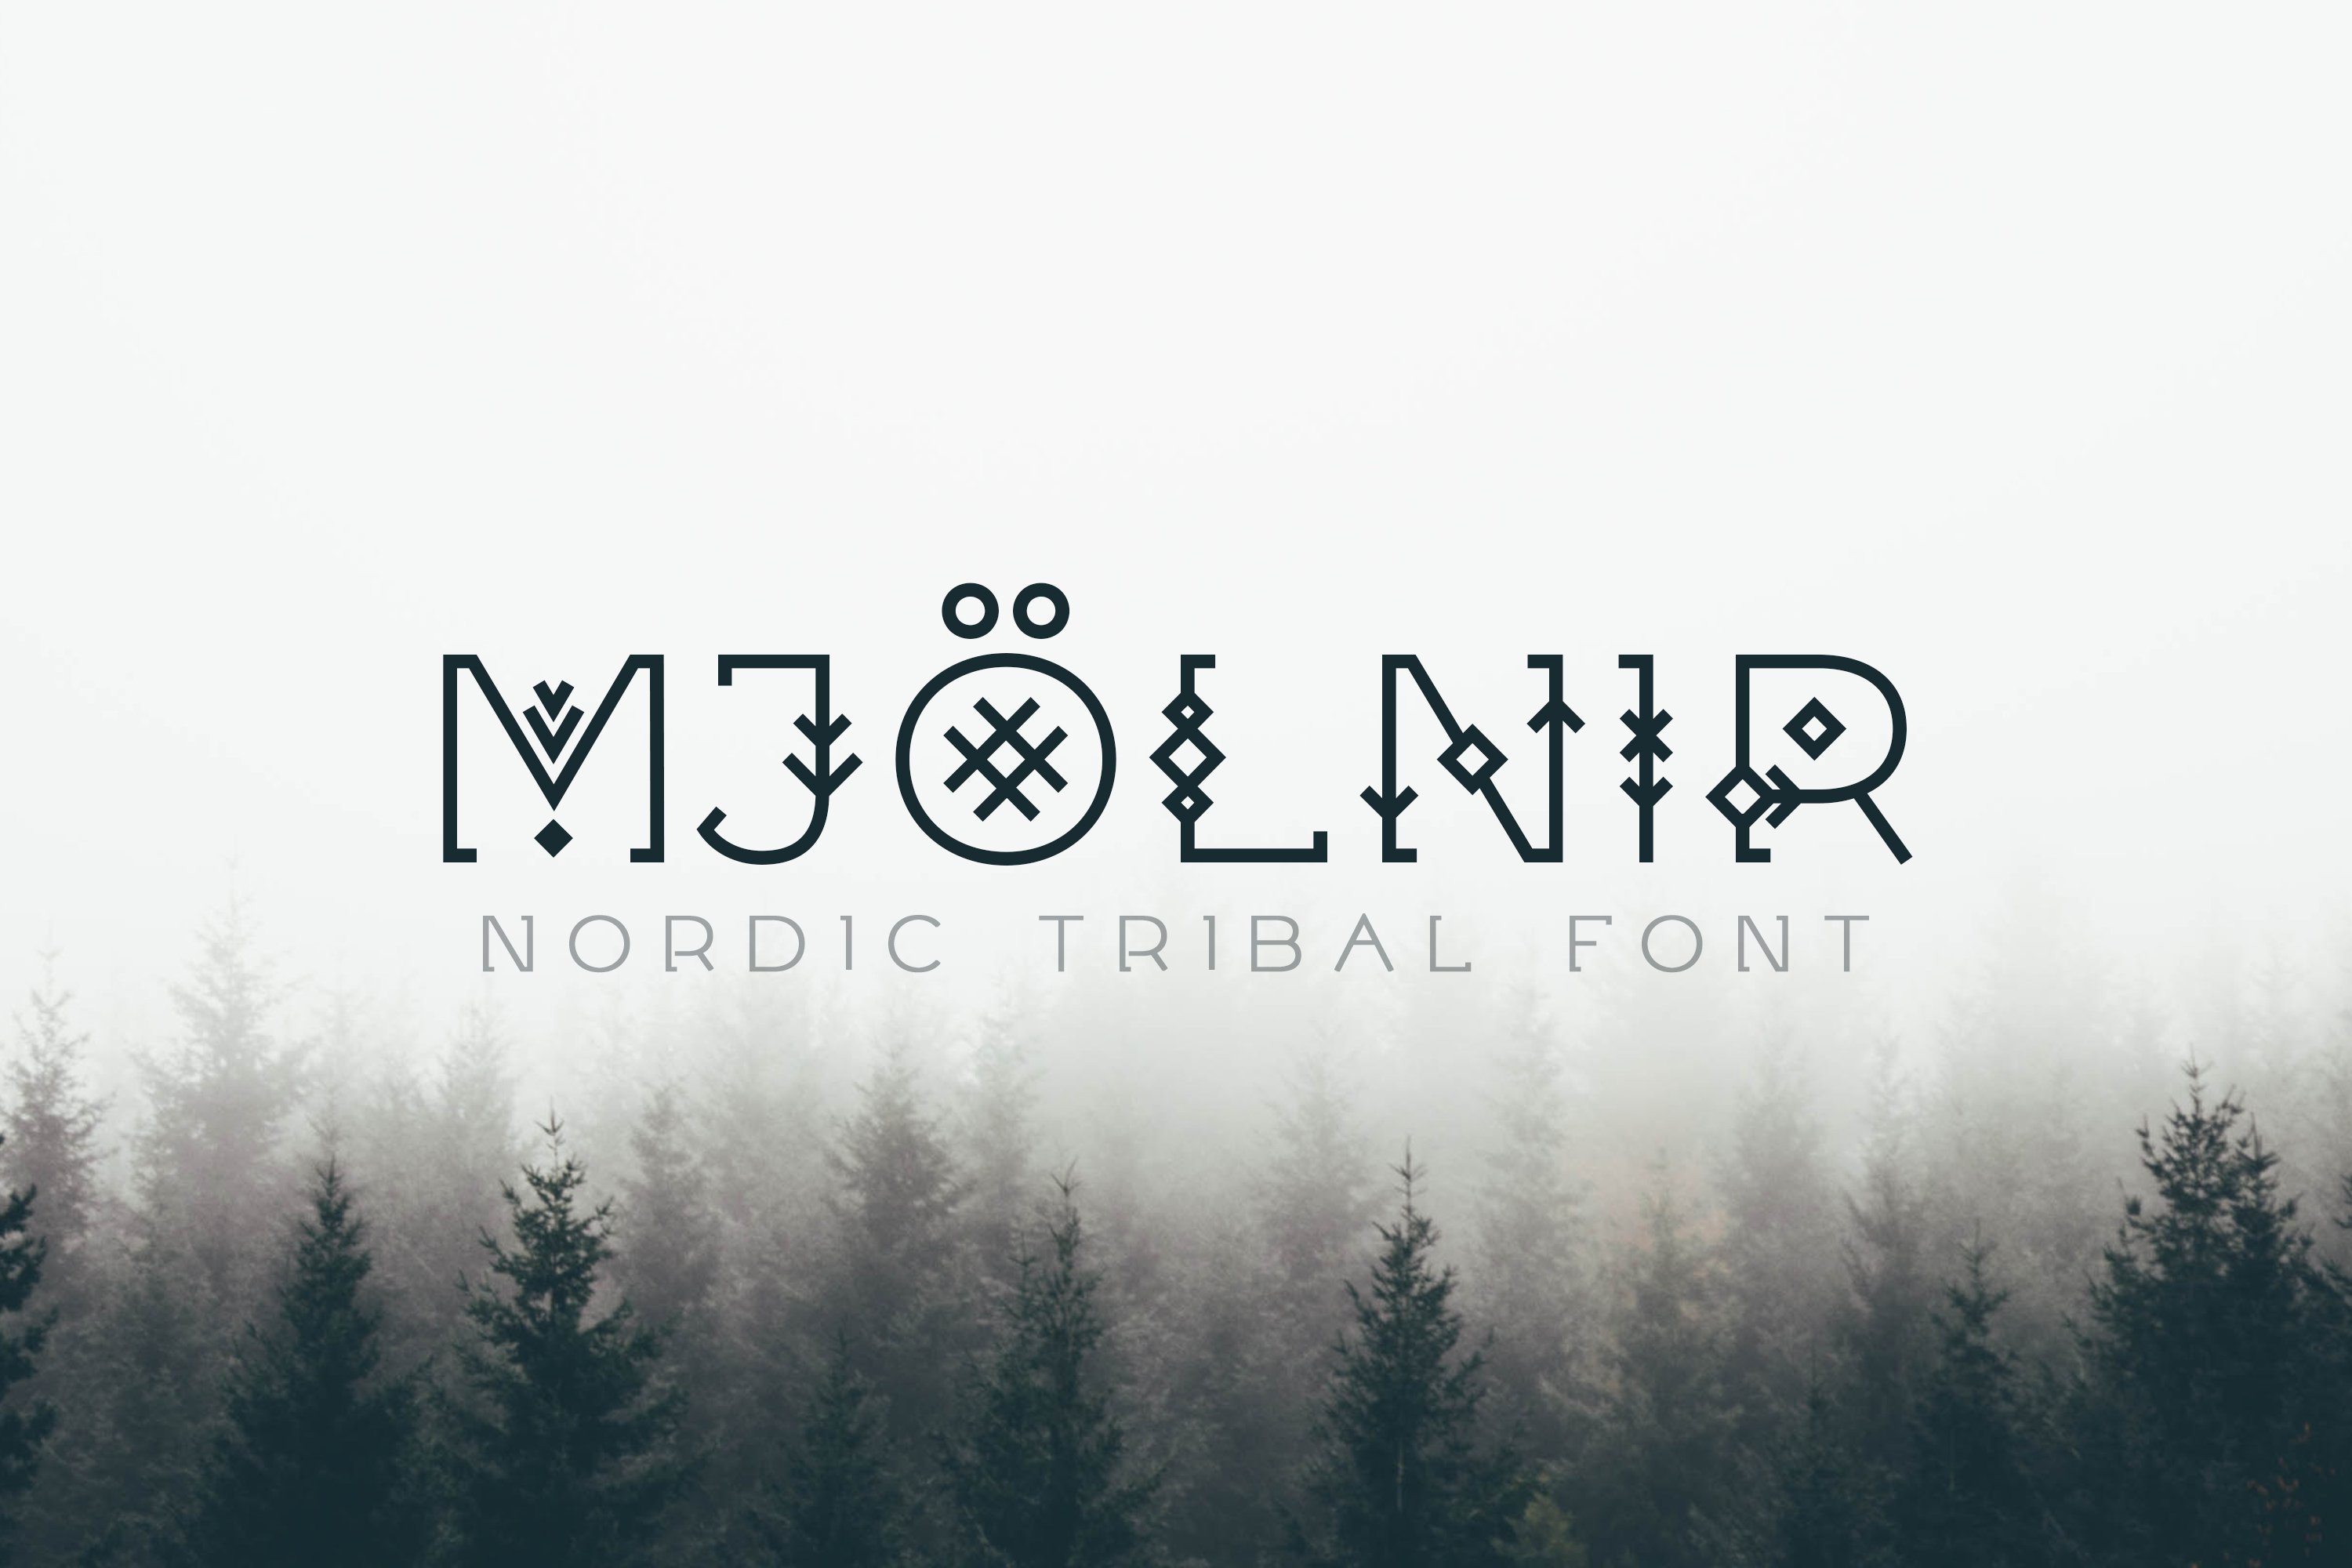 Mjölnir - Nordic Tribal Font cover image.